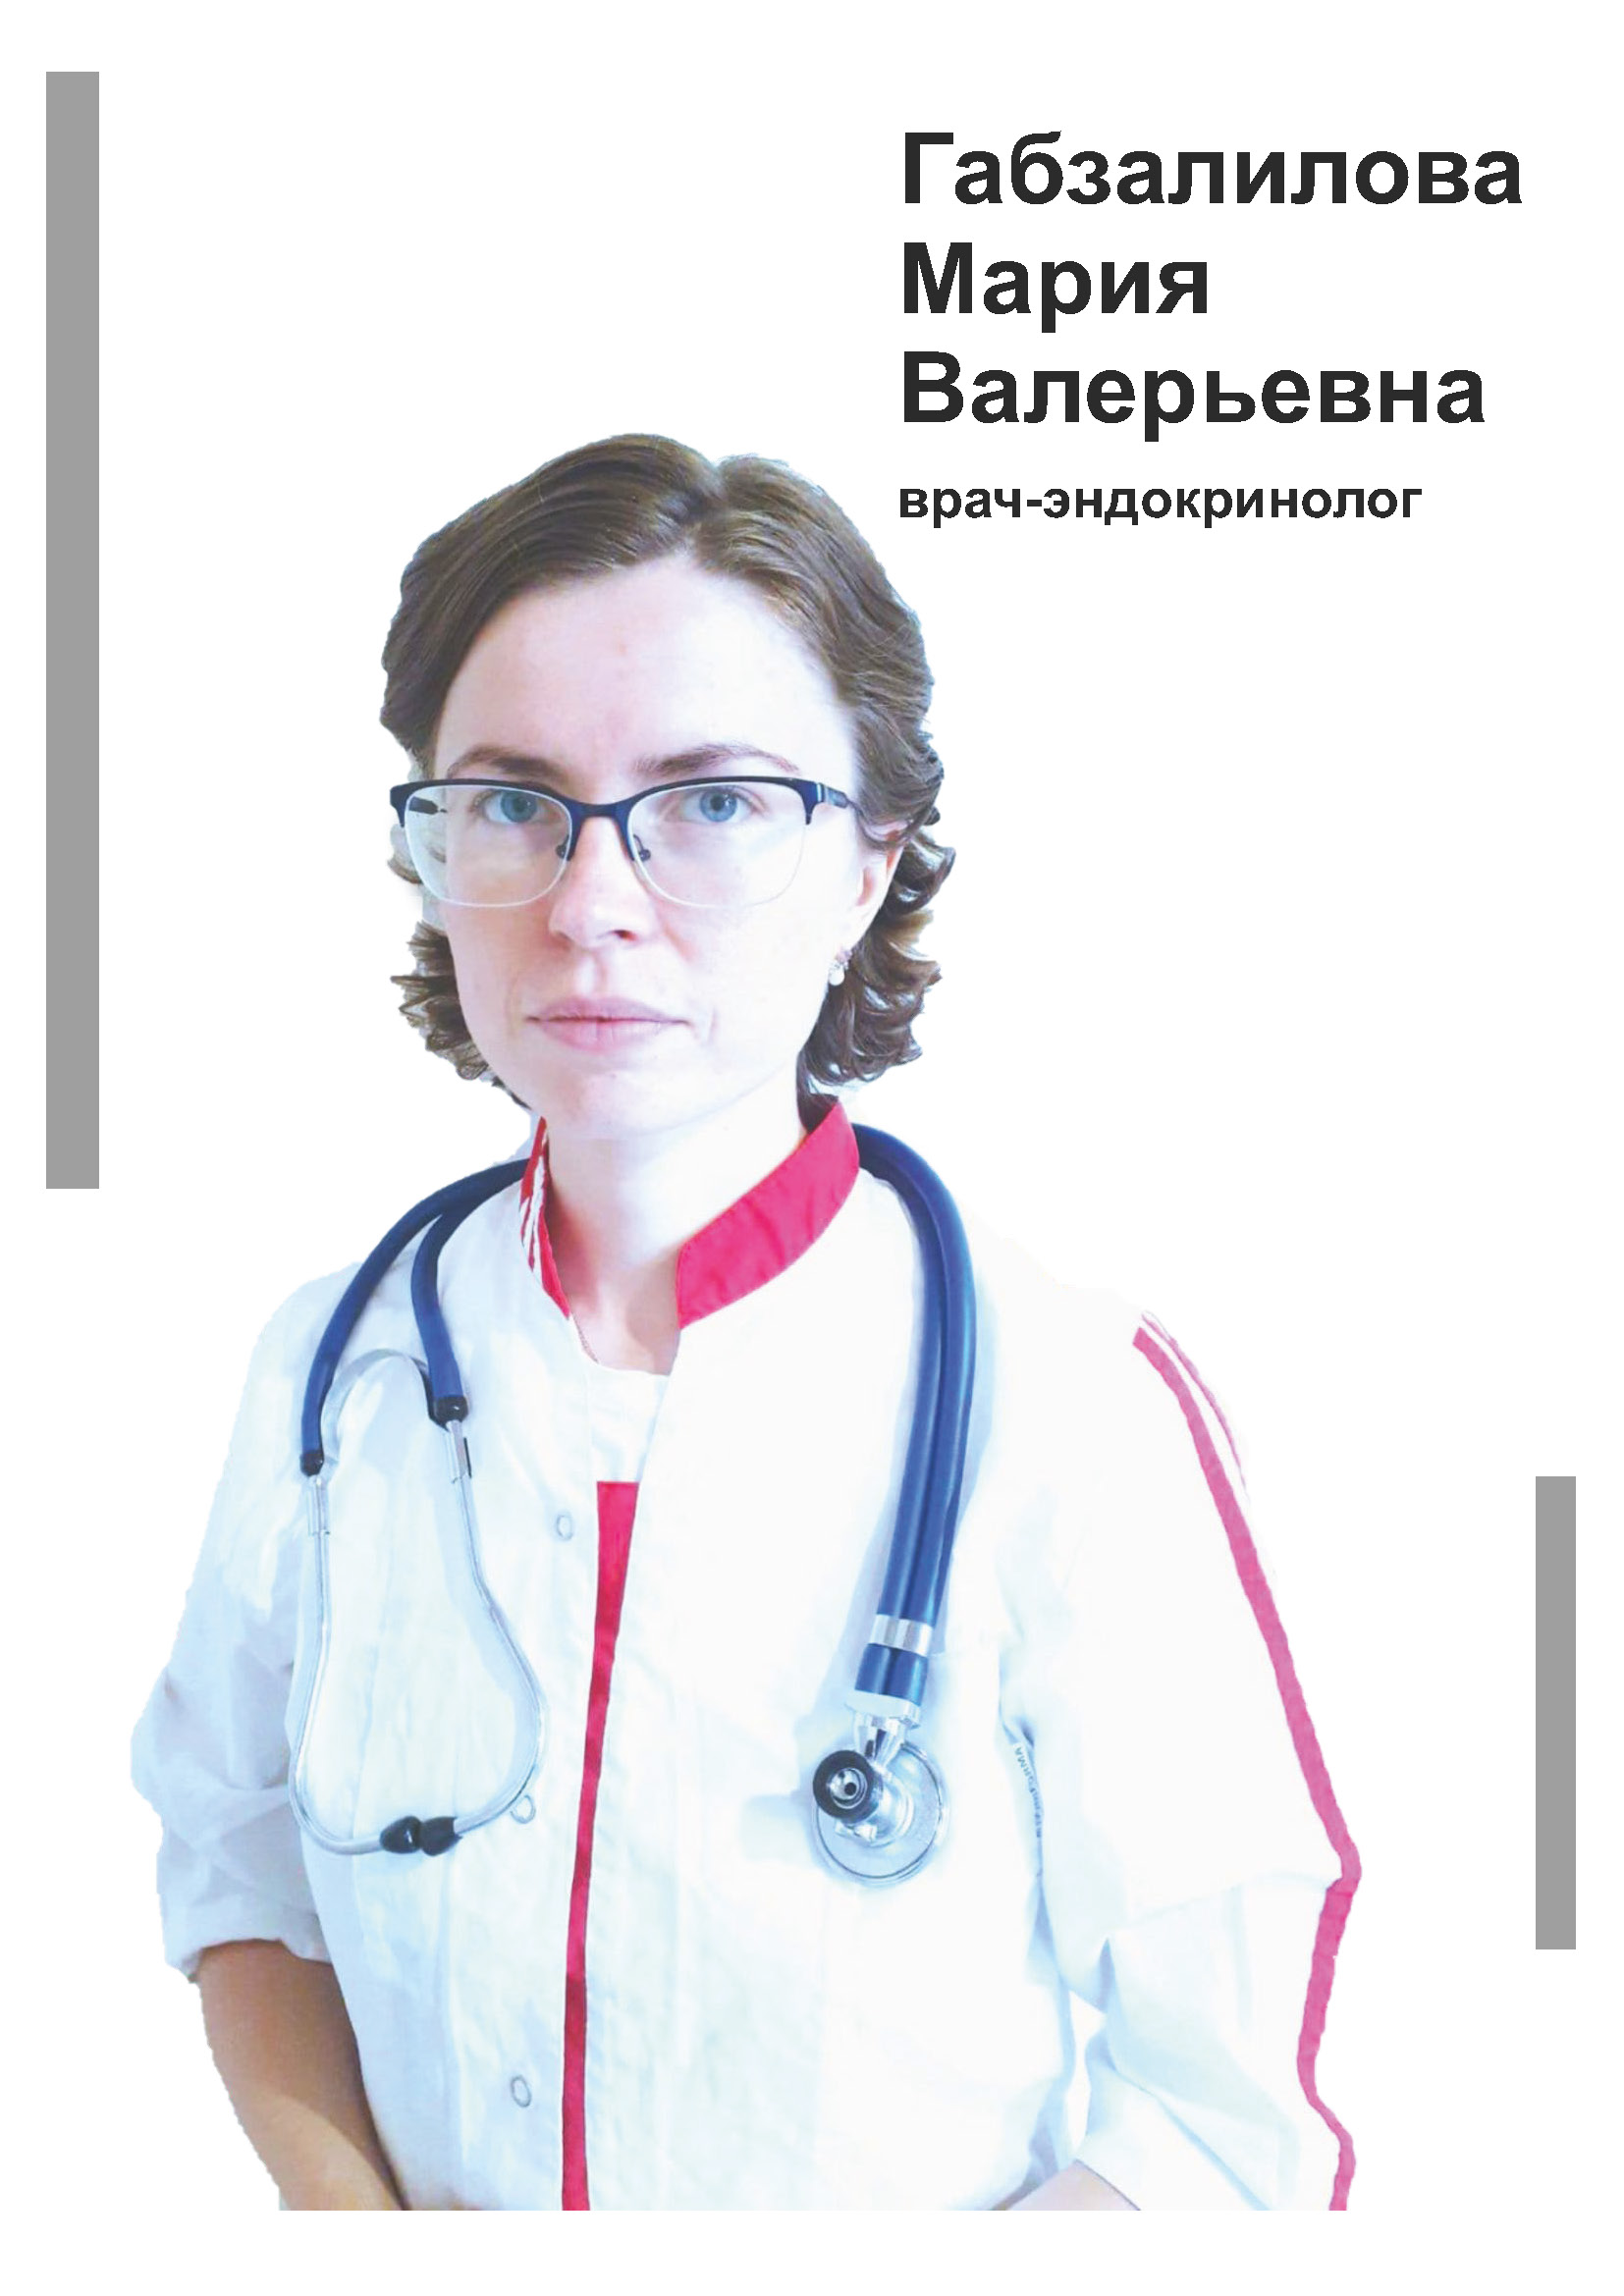 Габзалилова Мария Николаевна - врач эндокринолог в клинике Lezaffe г. Югорск